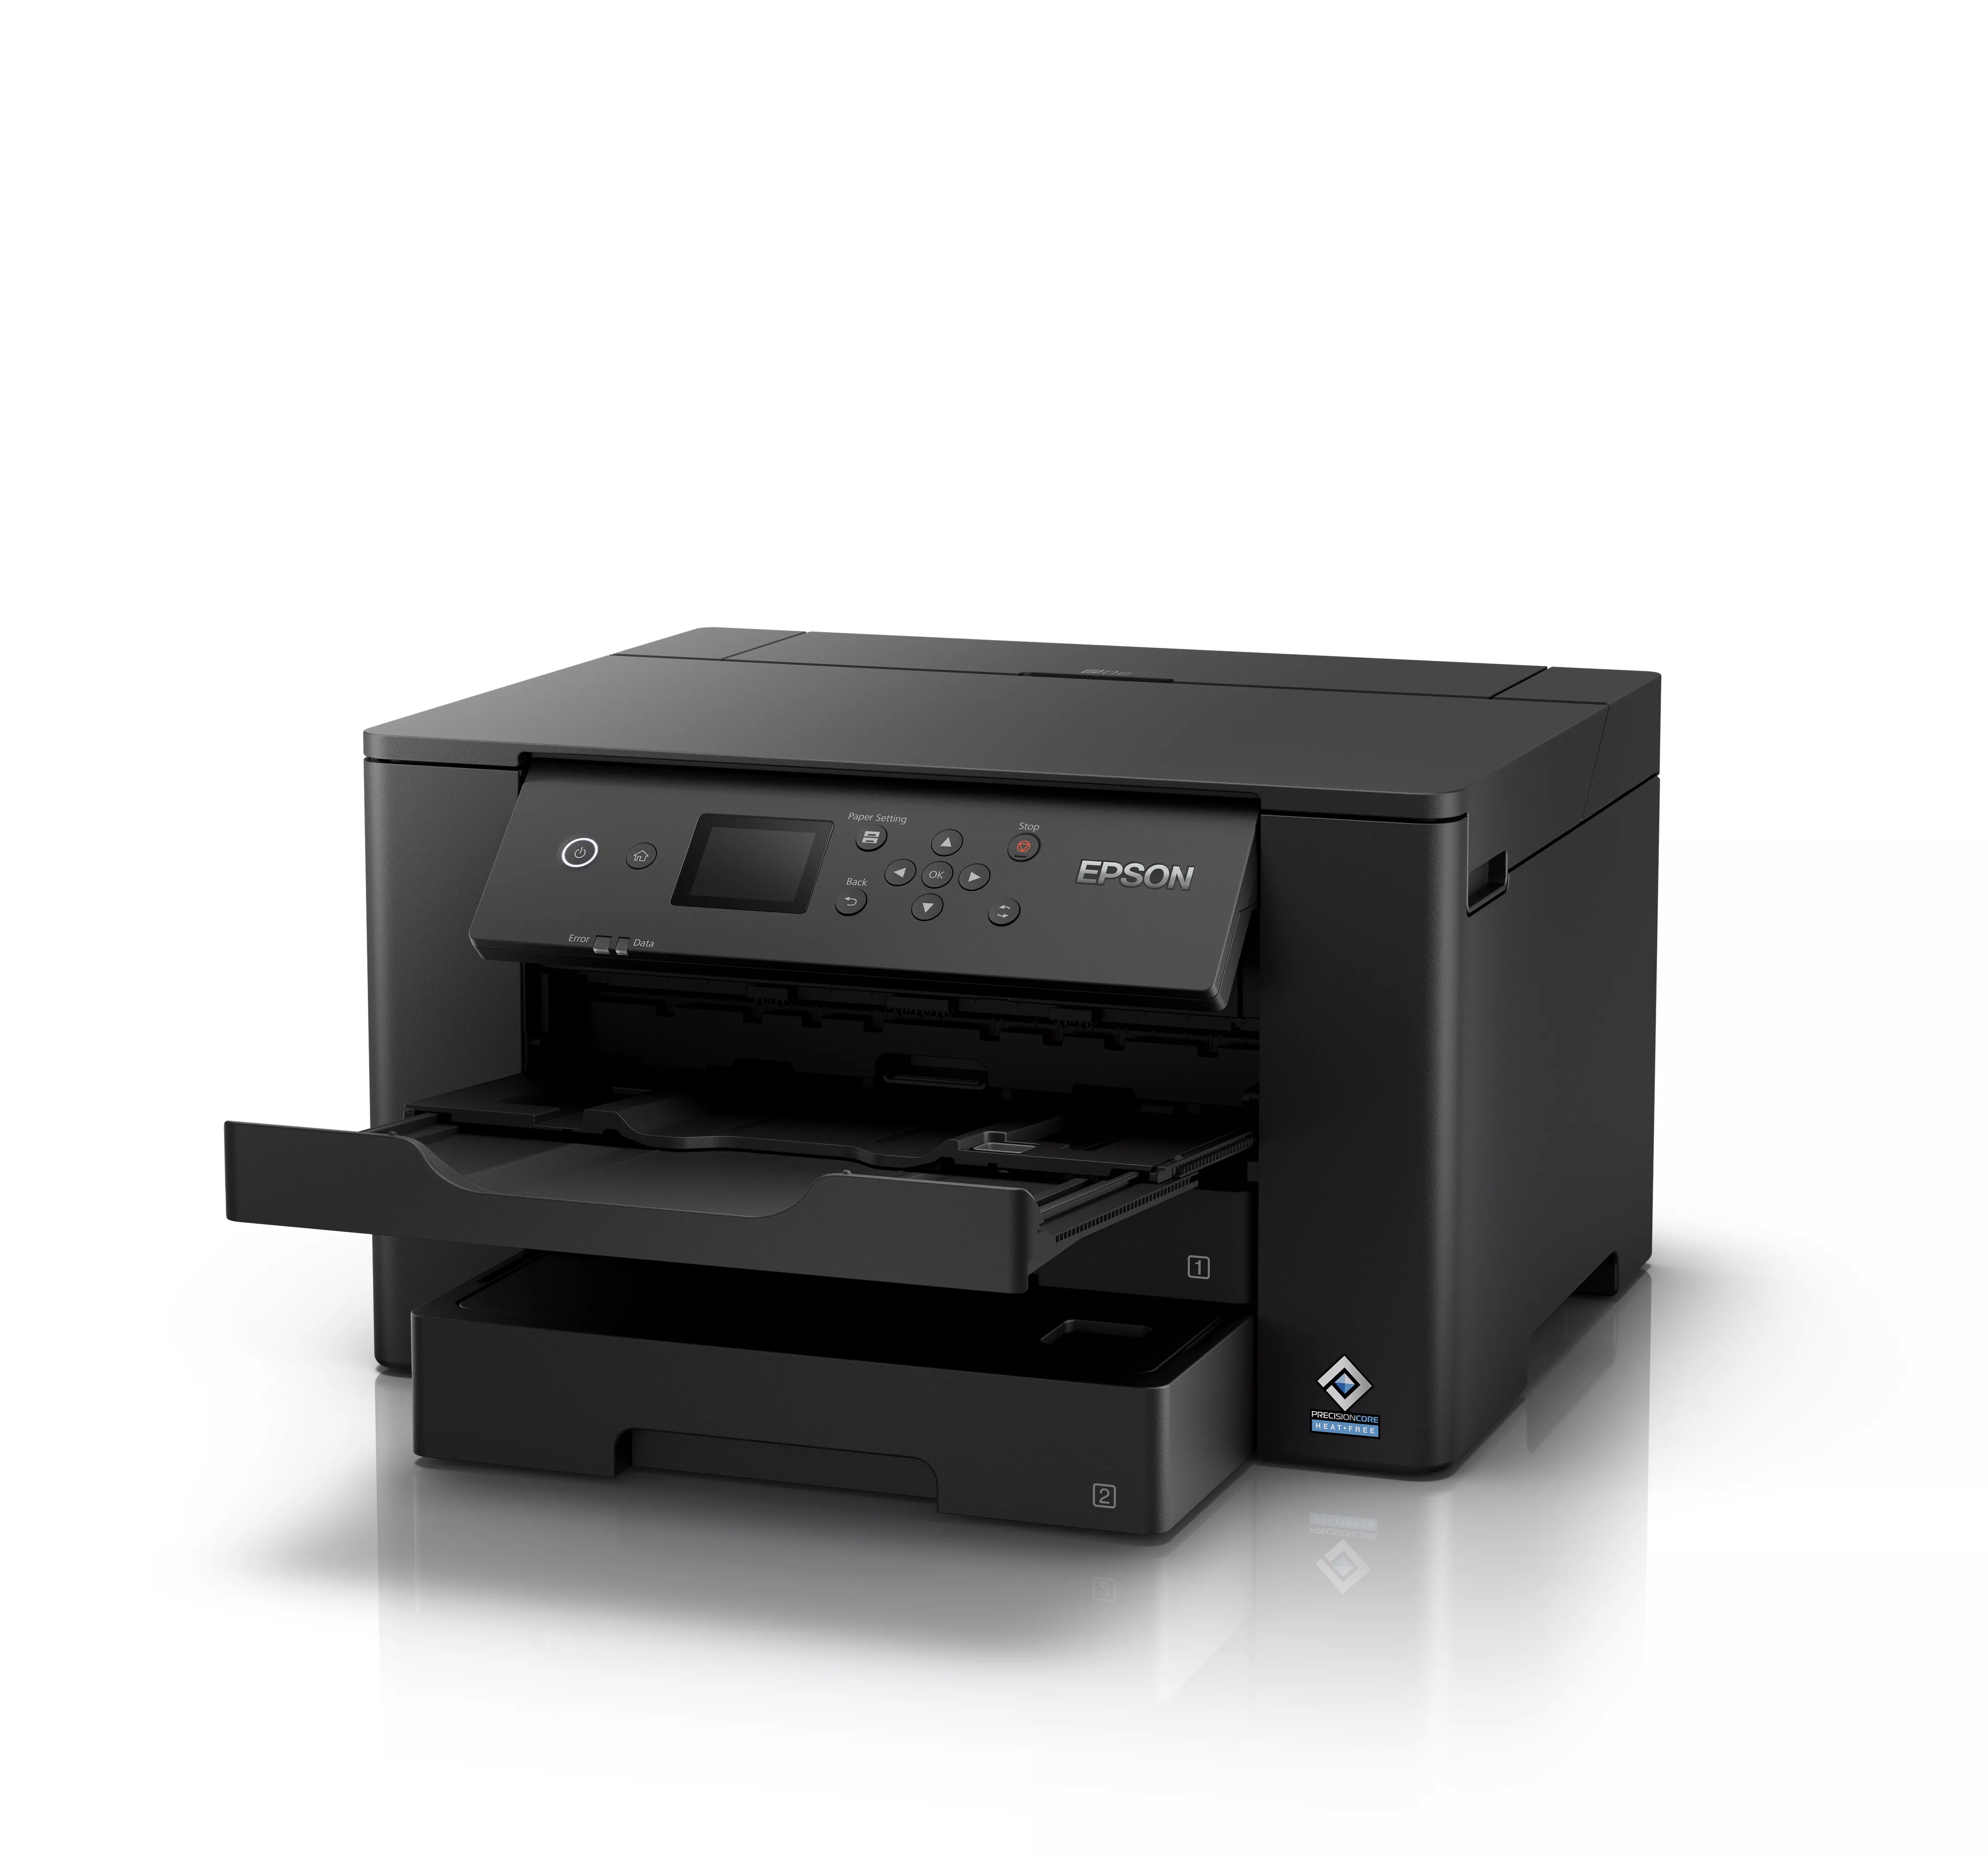 Vente EPSON WorkForce WF-7310DTW Printer colour Duplex ink-jet Epson au meilleur prix - visuel 4